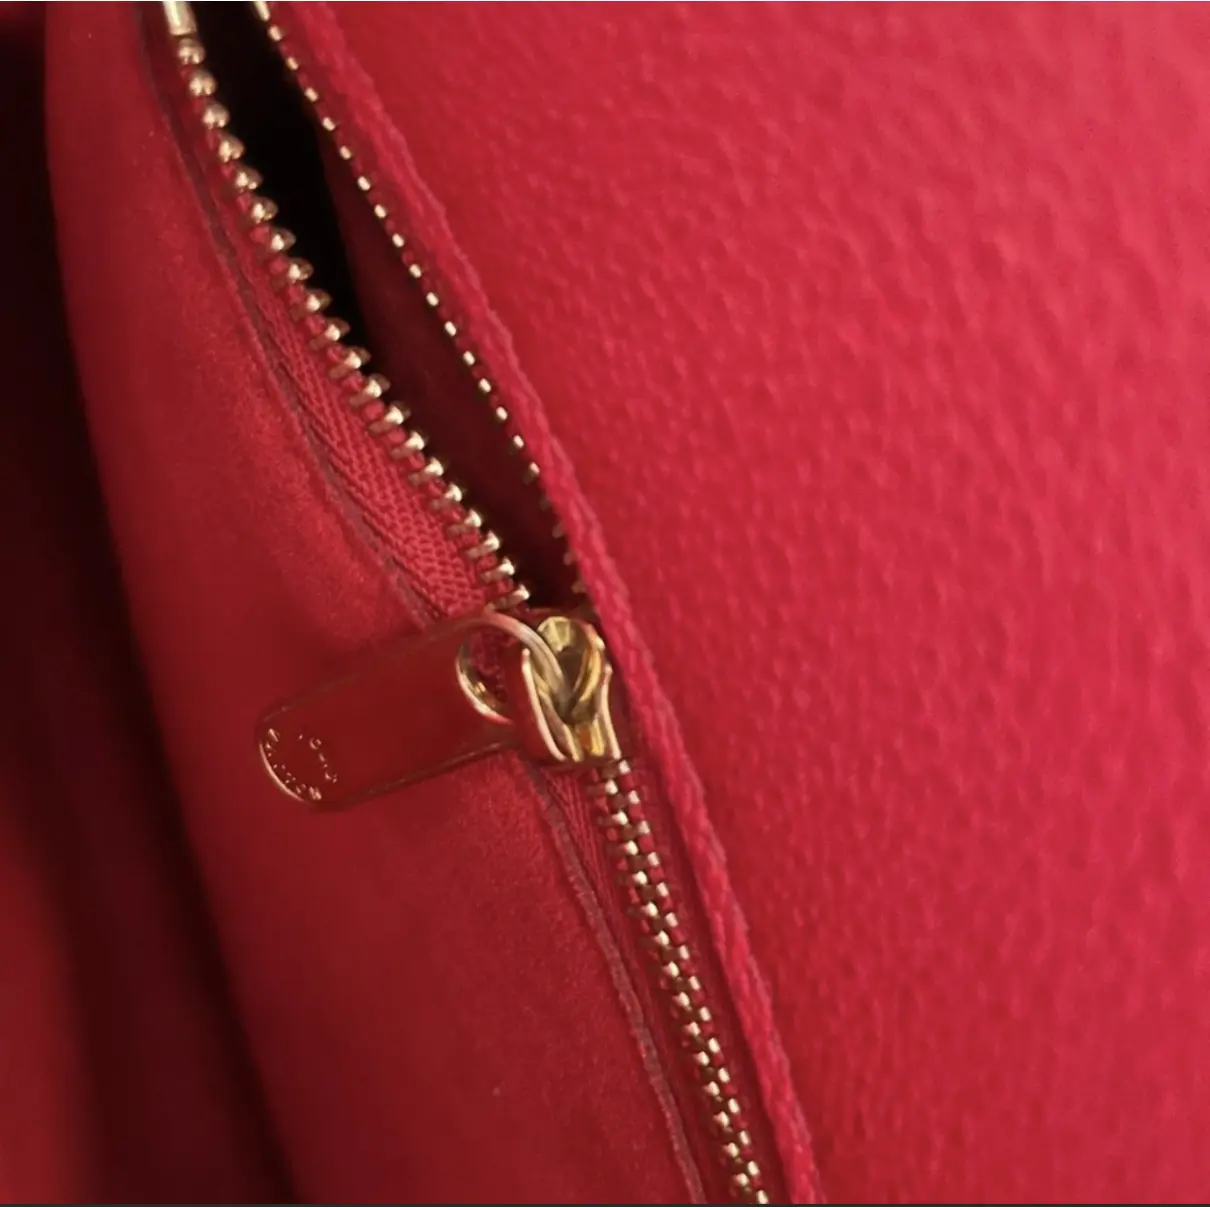 Florine leather handbag Louis Vuitton